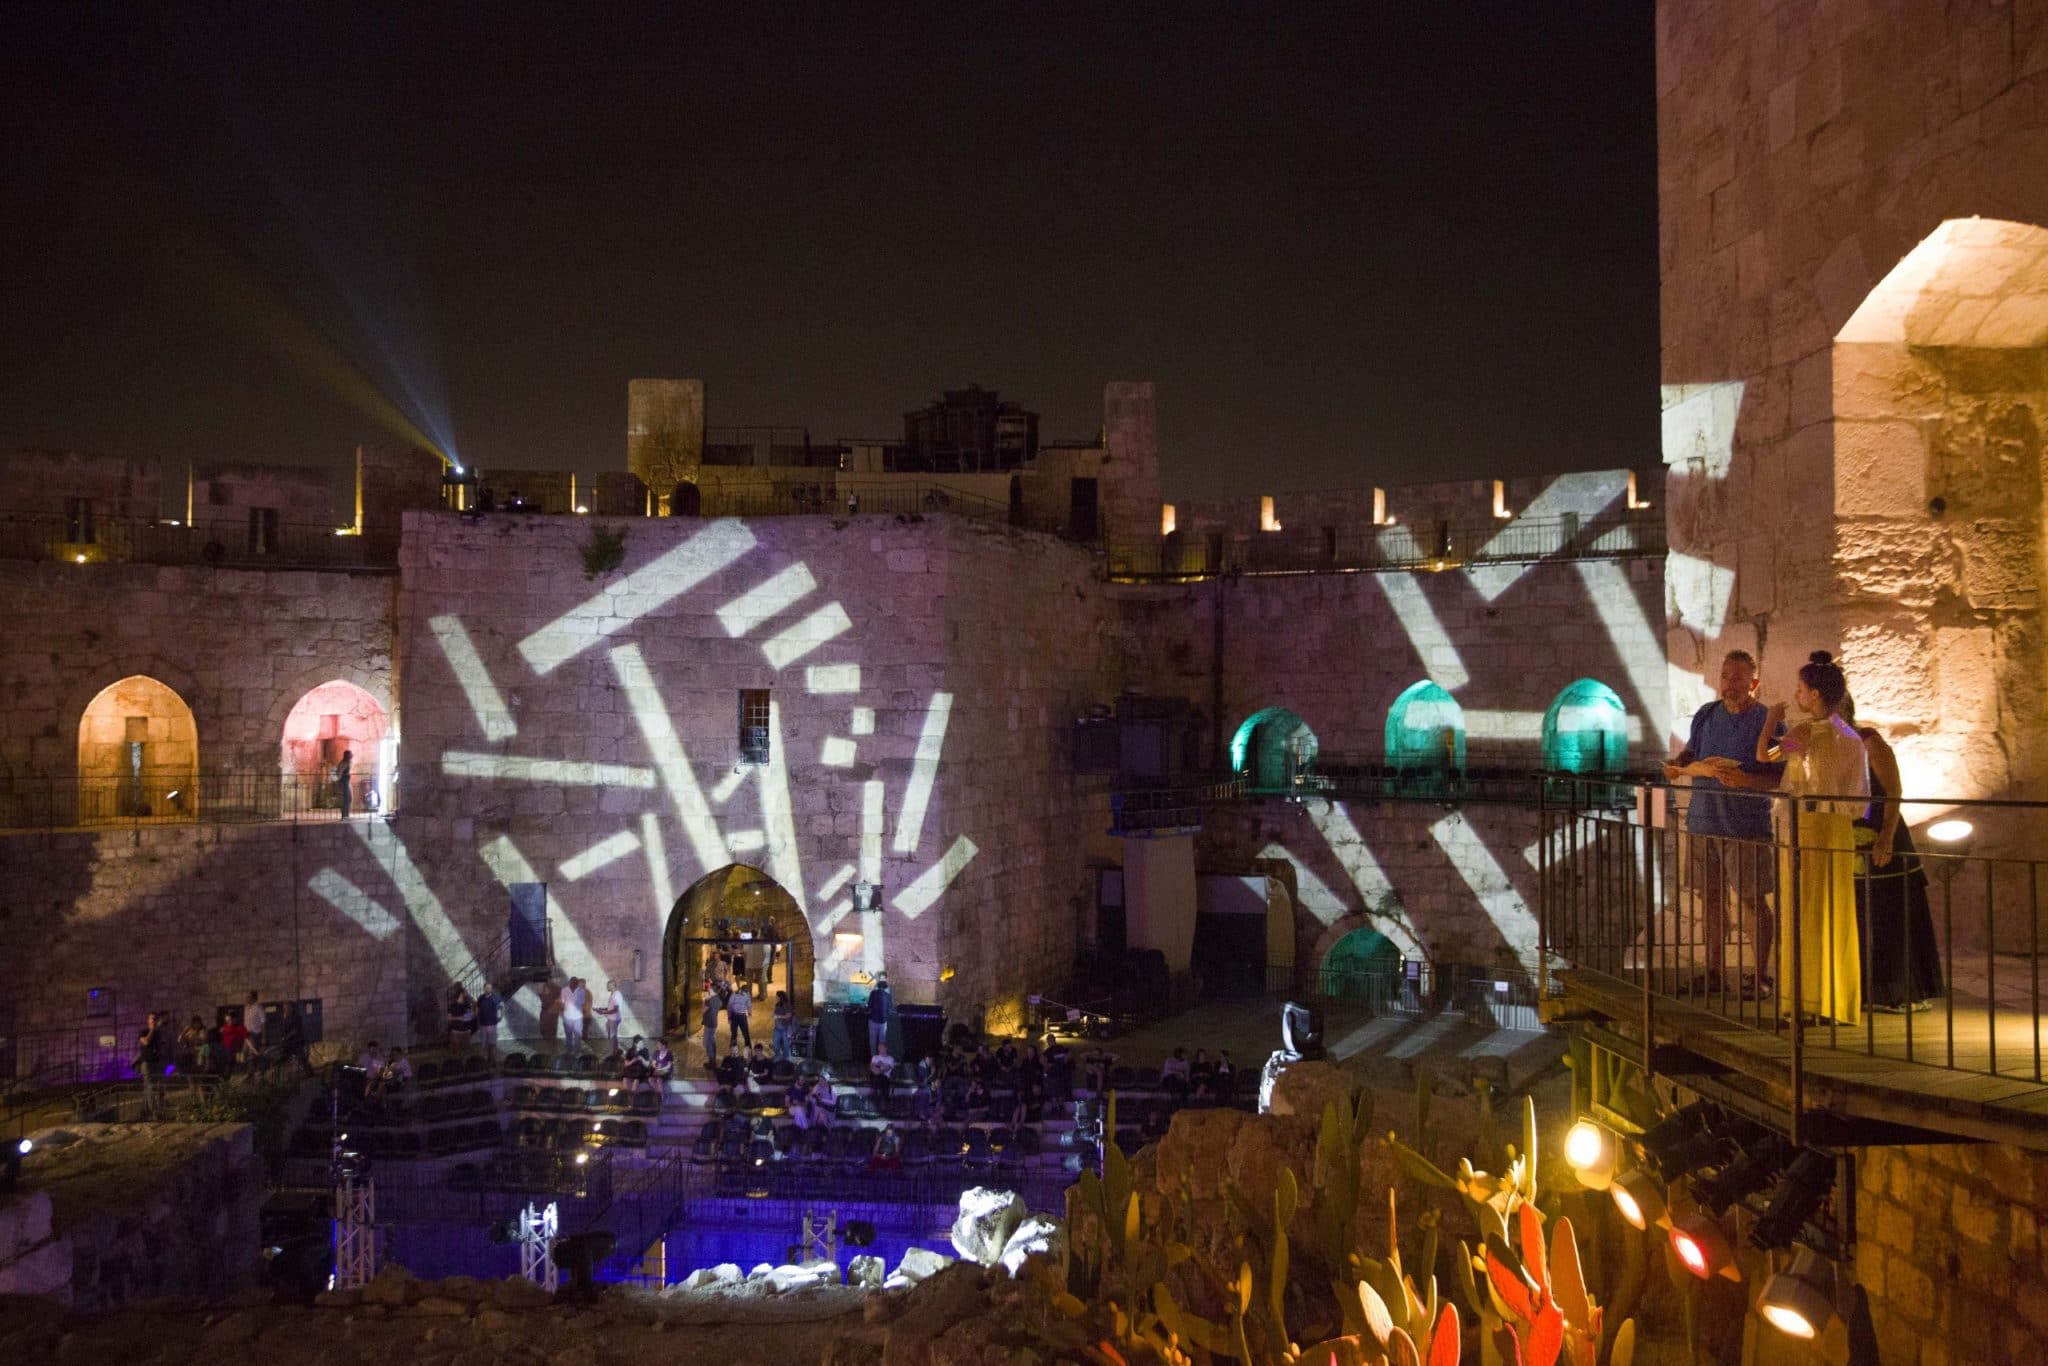 צילום של המלך דוד - מופע אור קולי לילי במגדל דוד